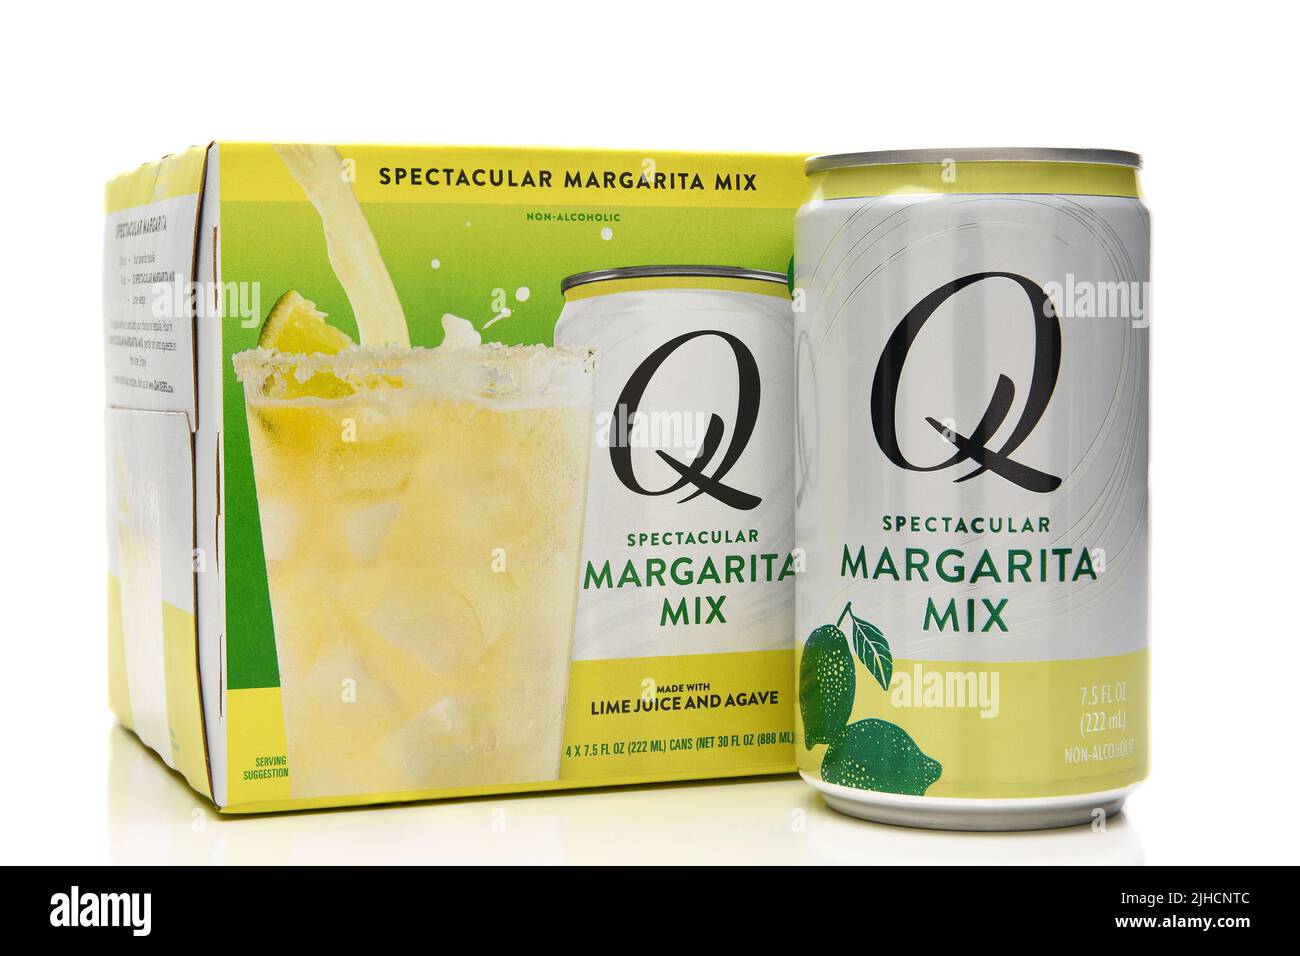 IRVINE, CALIFORNIE - 15 JUL 2022: Un paquet de quatre Q spectaculaire Margarita Mix avec une boîte à l'extérieur du paquet. Banque D'Images